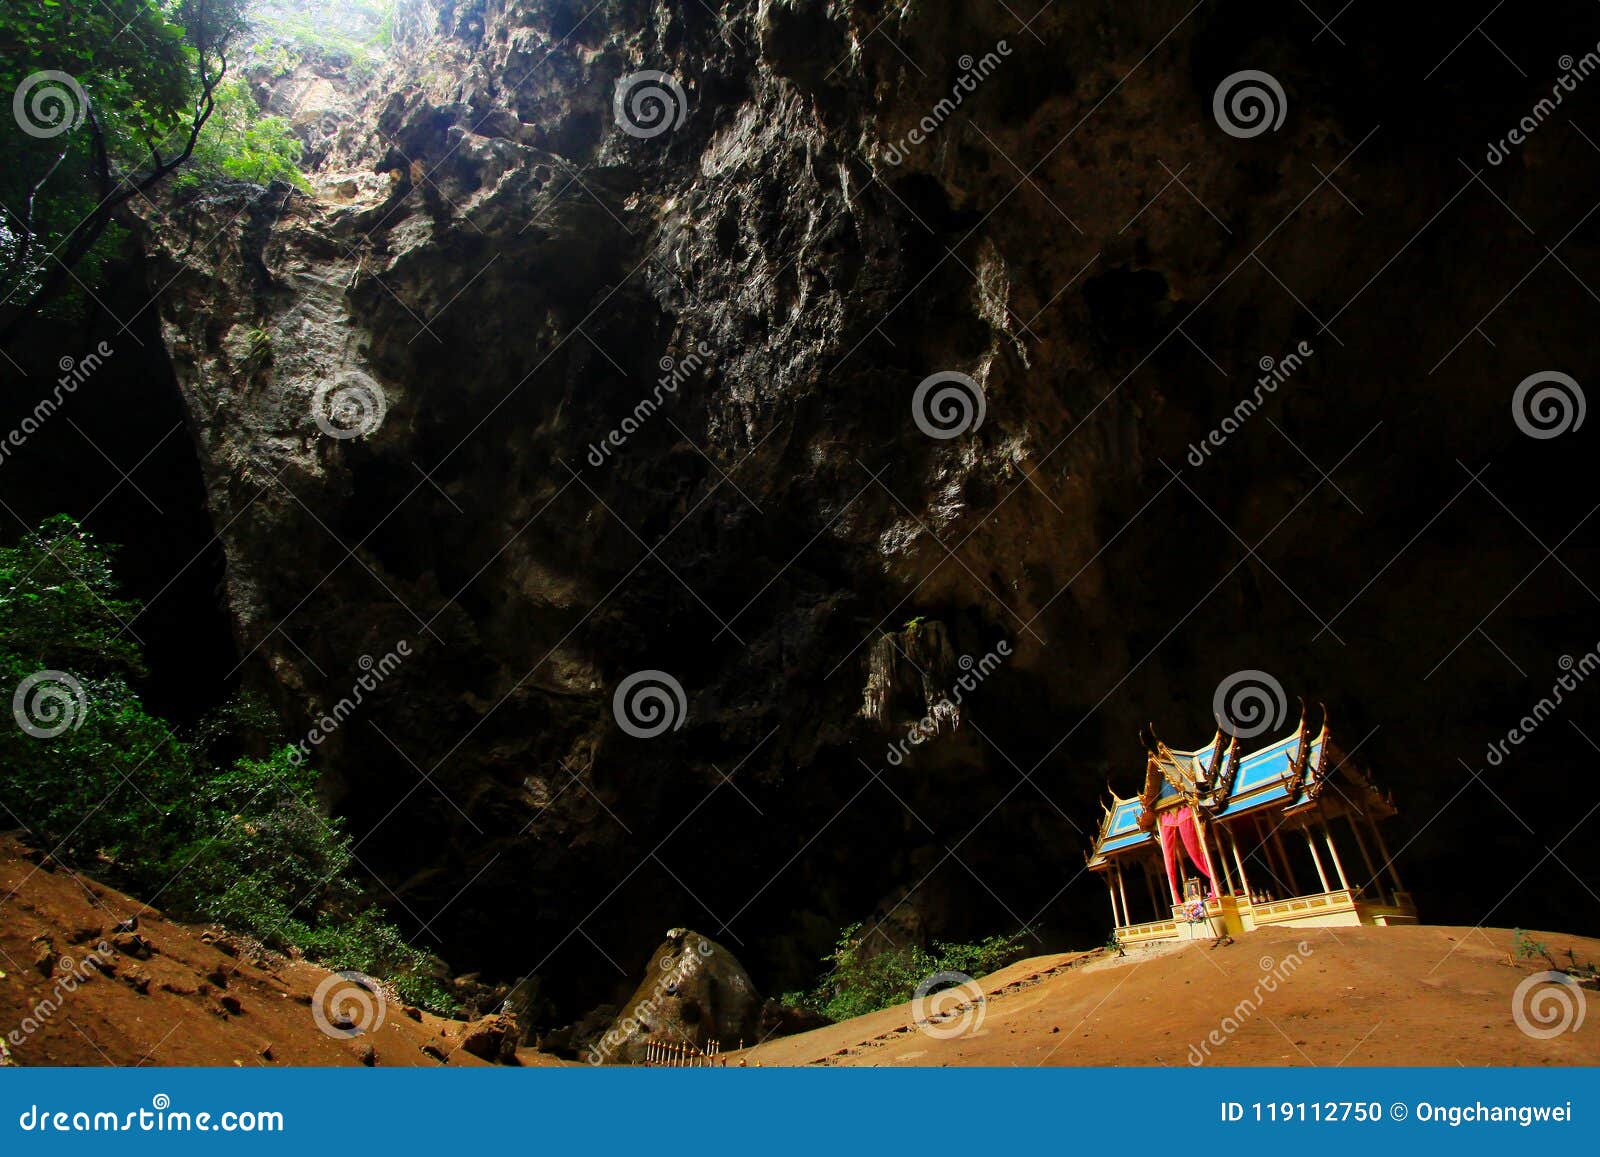 khuha kharuehat pavilion, phraya nakhon cave, khao sam roi yot national park, thailand